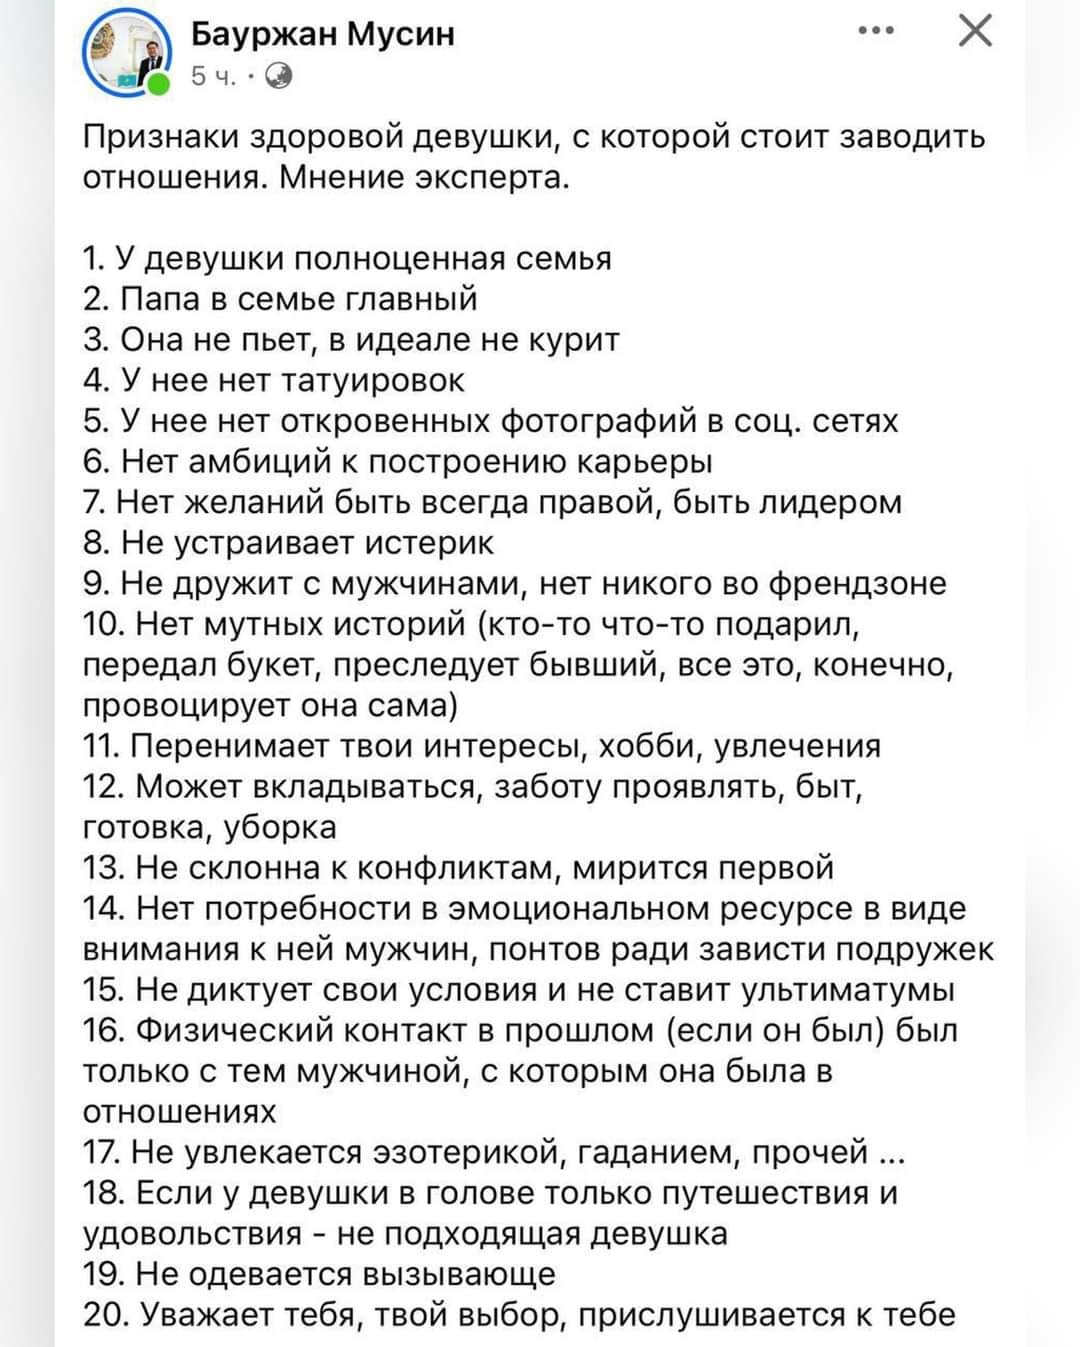 «Должен быть девственником». В Казахстане опубликовали признаки «здорового мужика»